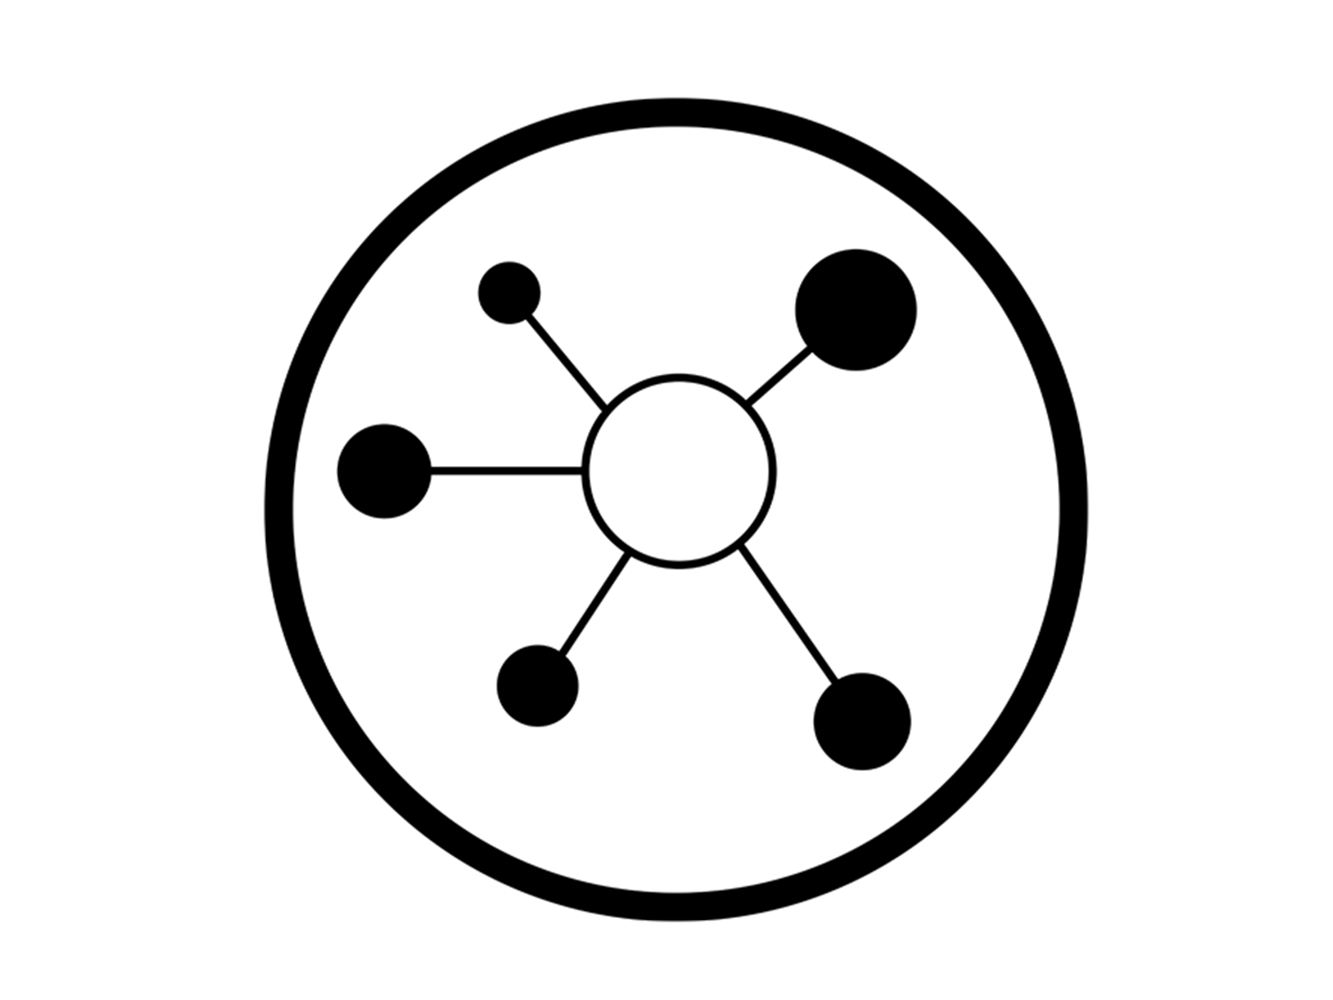 En grafisk illustration av en cirkel